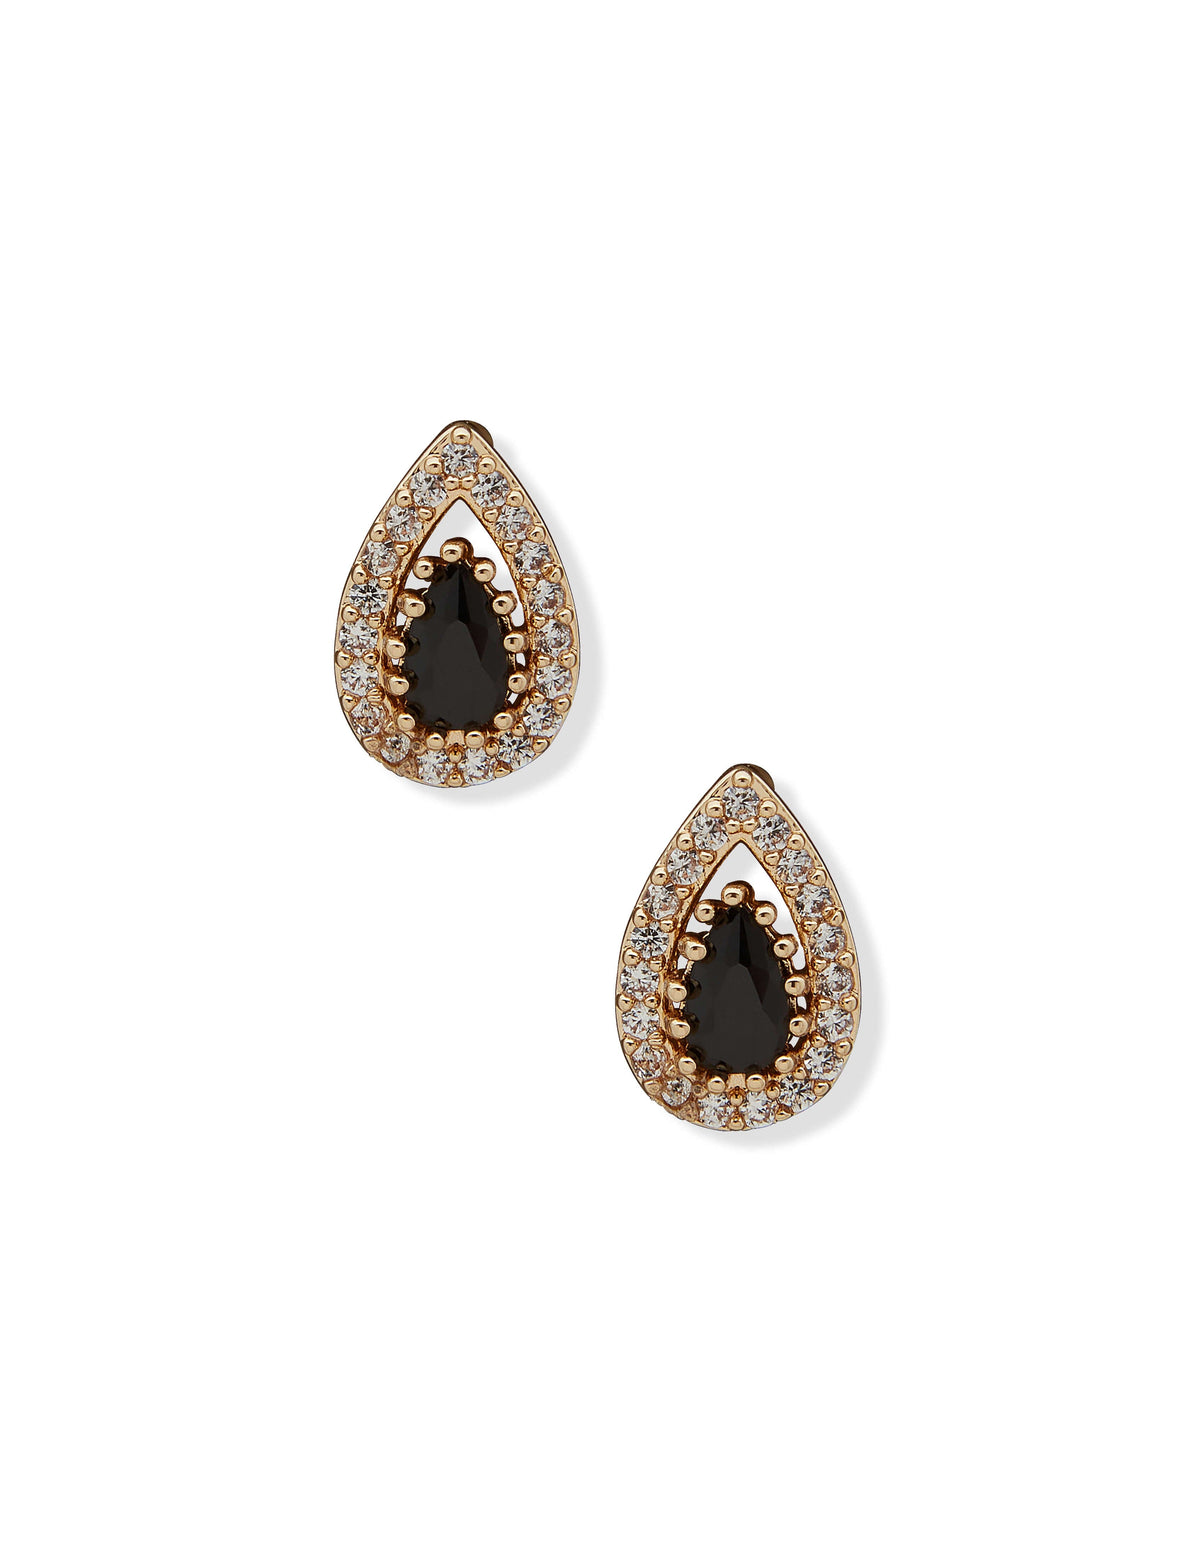 Anne Klein Gold Tone Pear Stone Halo Button Jet Pierced Earrings